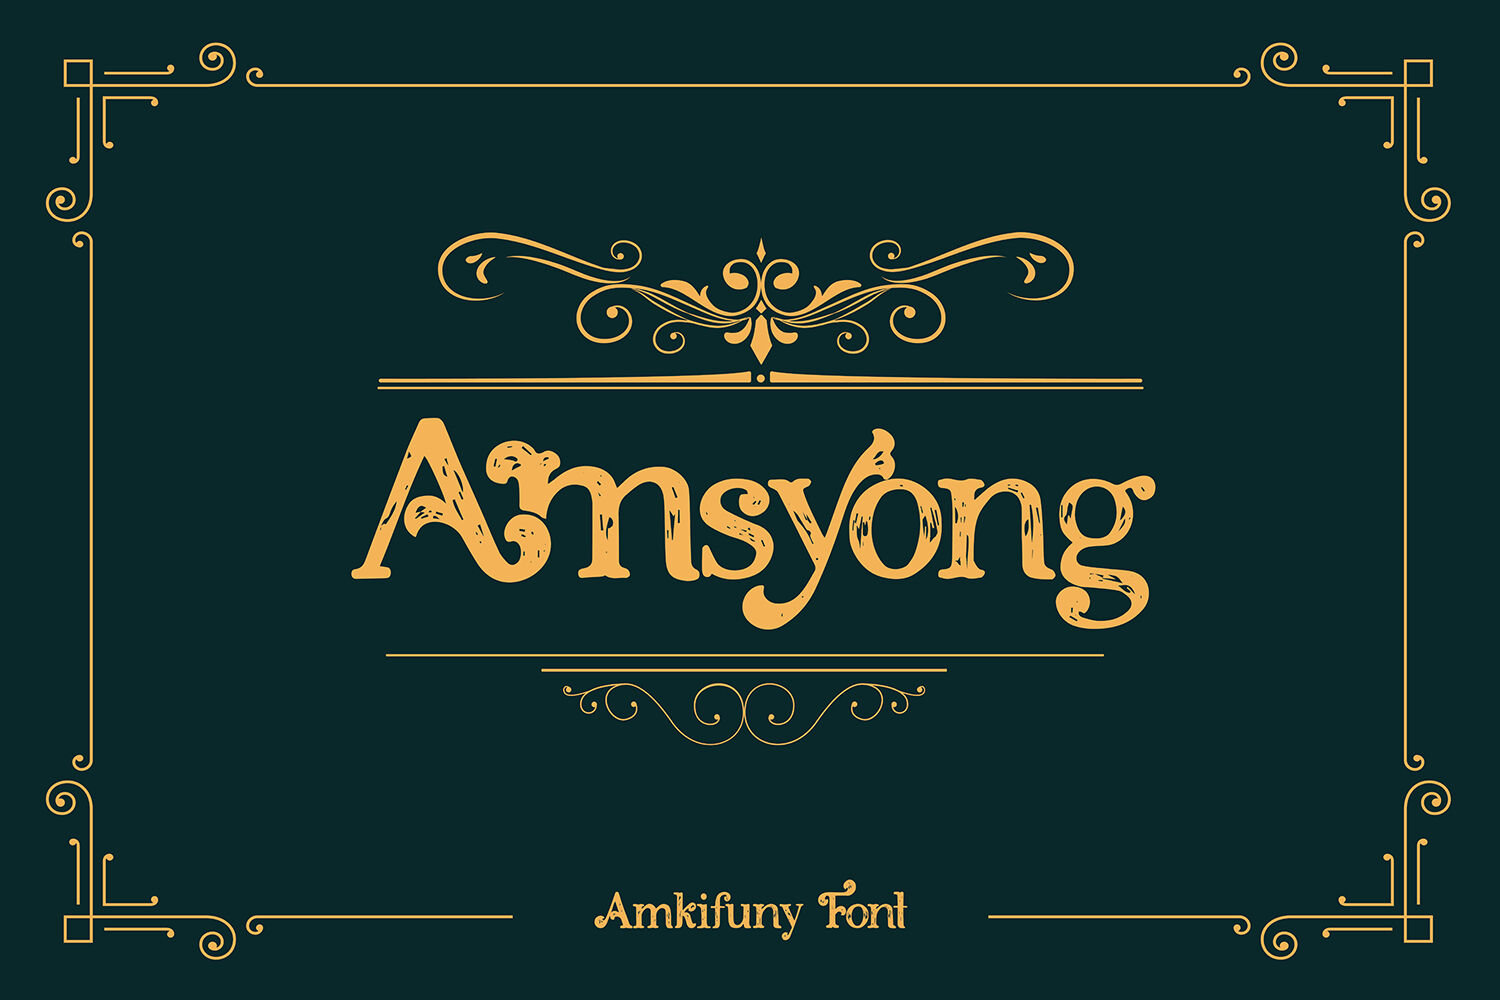 Amkifuny New Brush Serif Display Font Typeface By Maulana Creative Thehungryjpeg Com